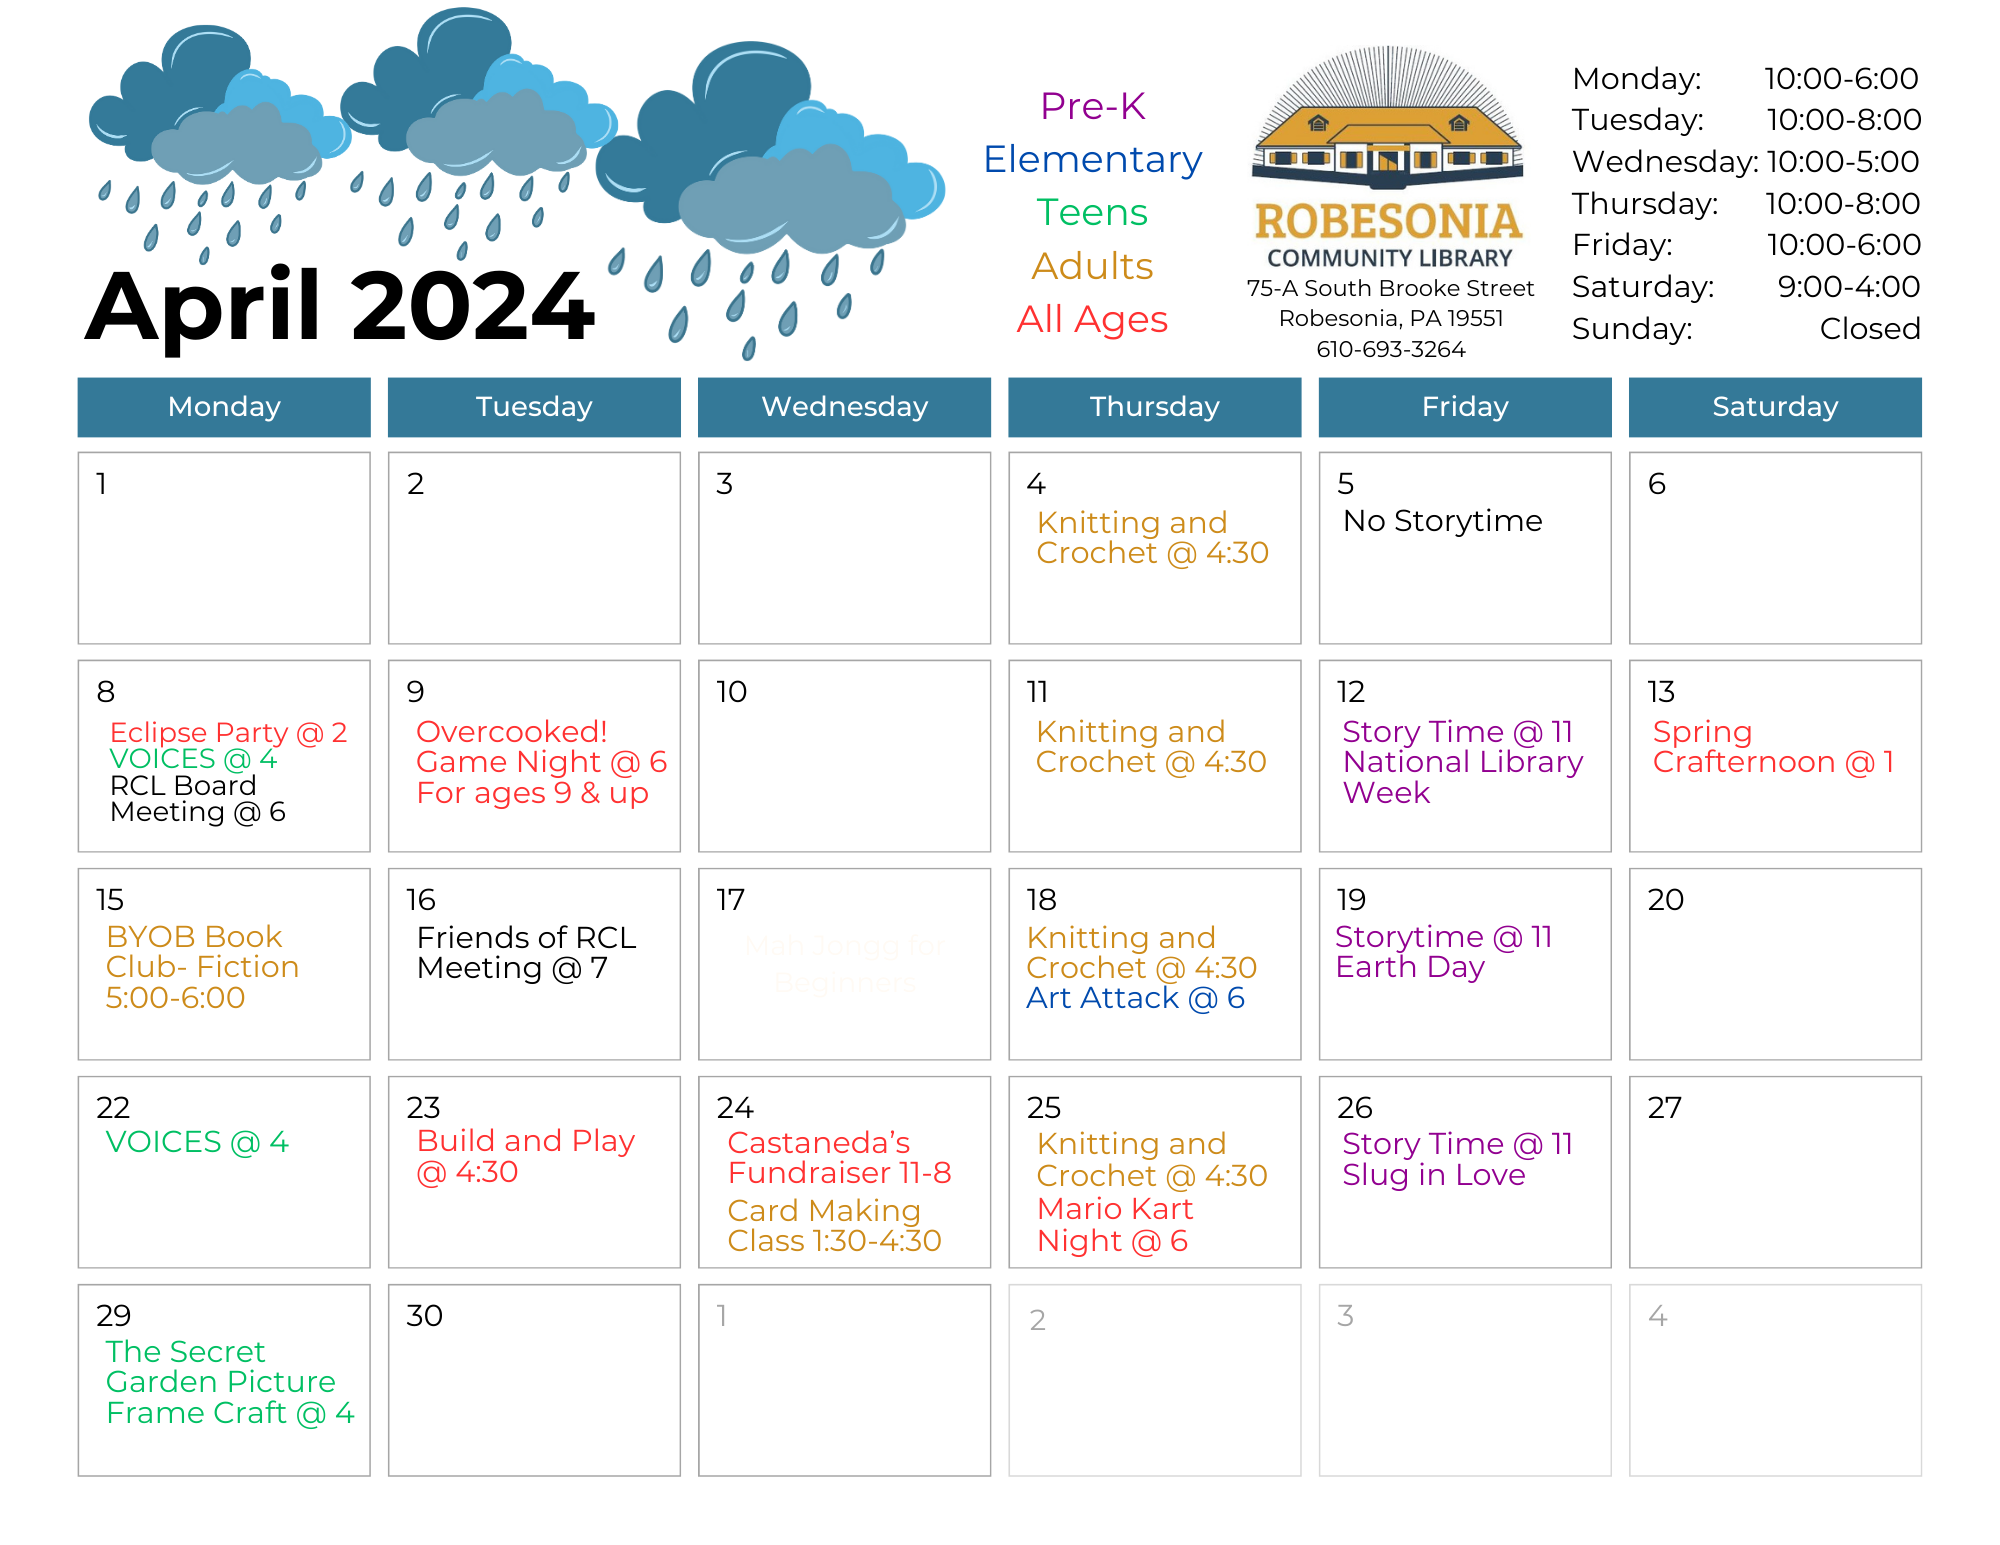 April's calendar of events